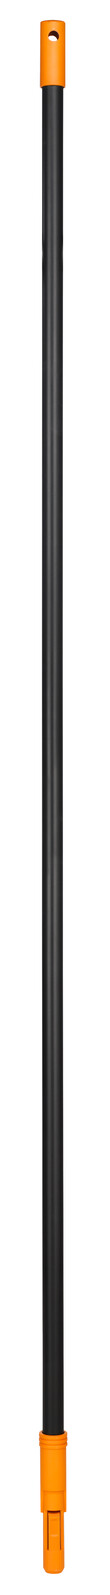 Черенок для лопаты Fiskars Solid (1014913)